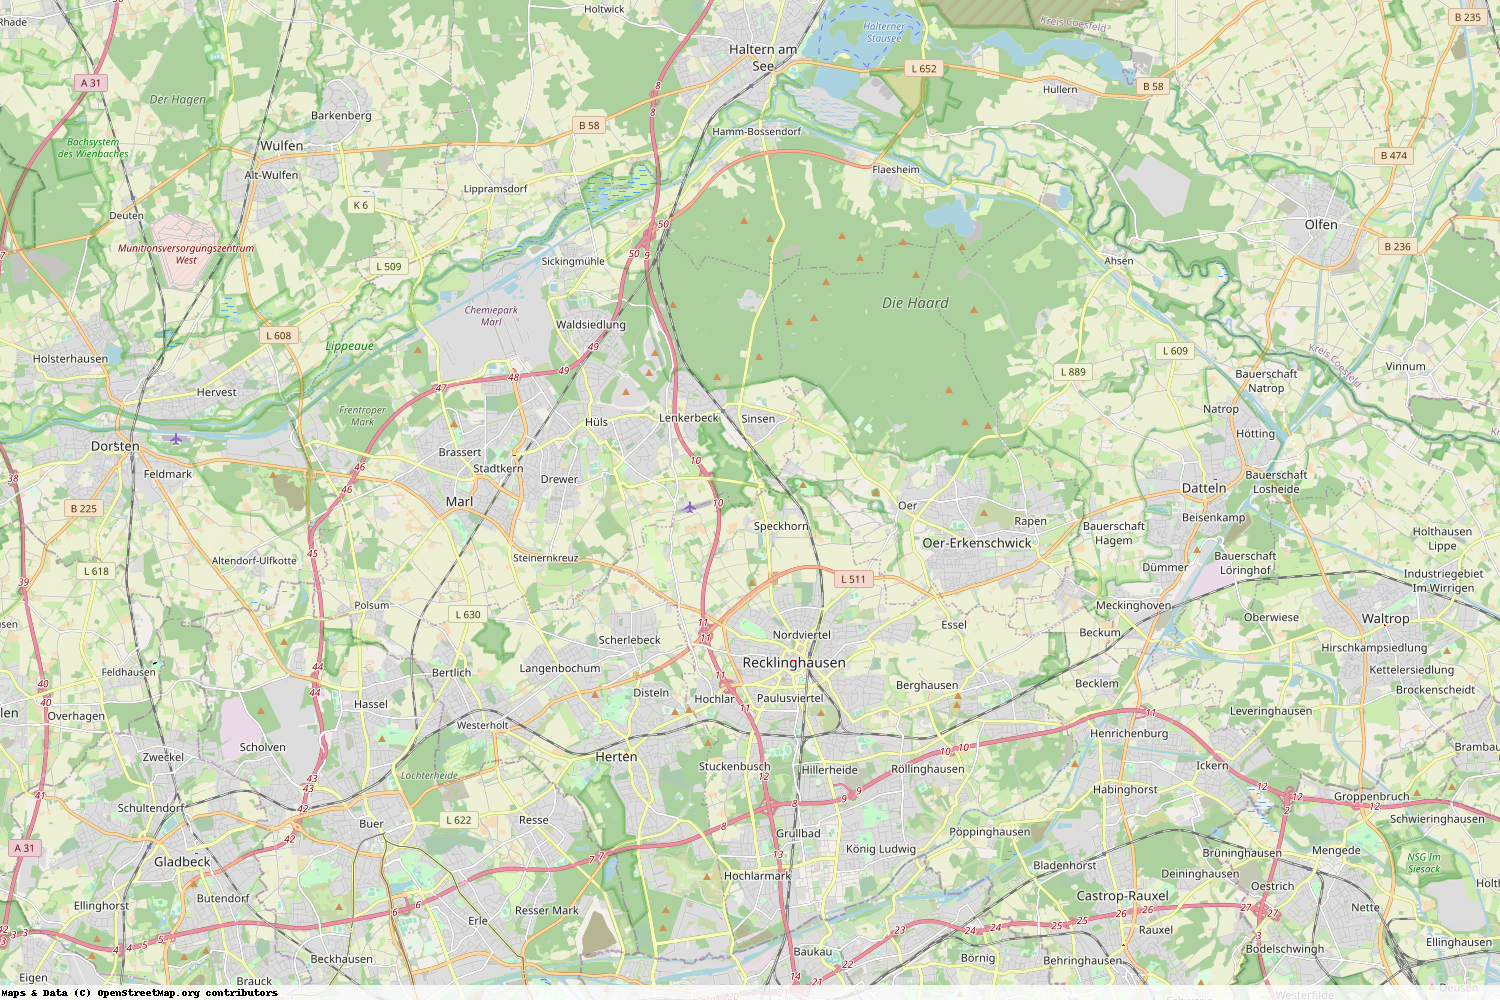 Ist gerade Stromausfall in Nordrhein-Westfalen - Recklinghausen?